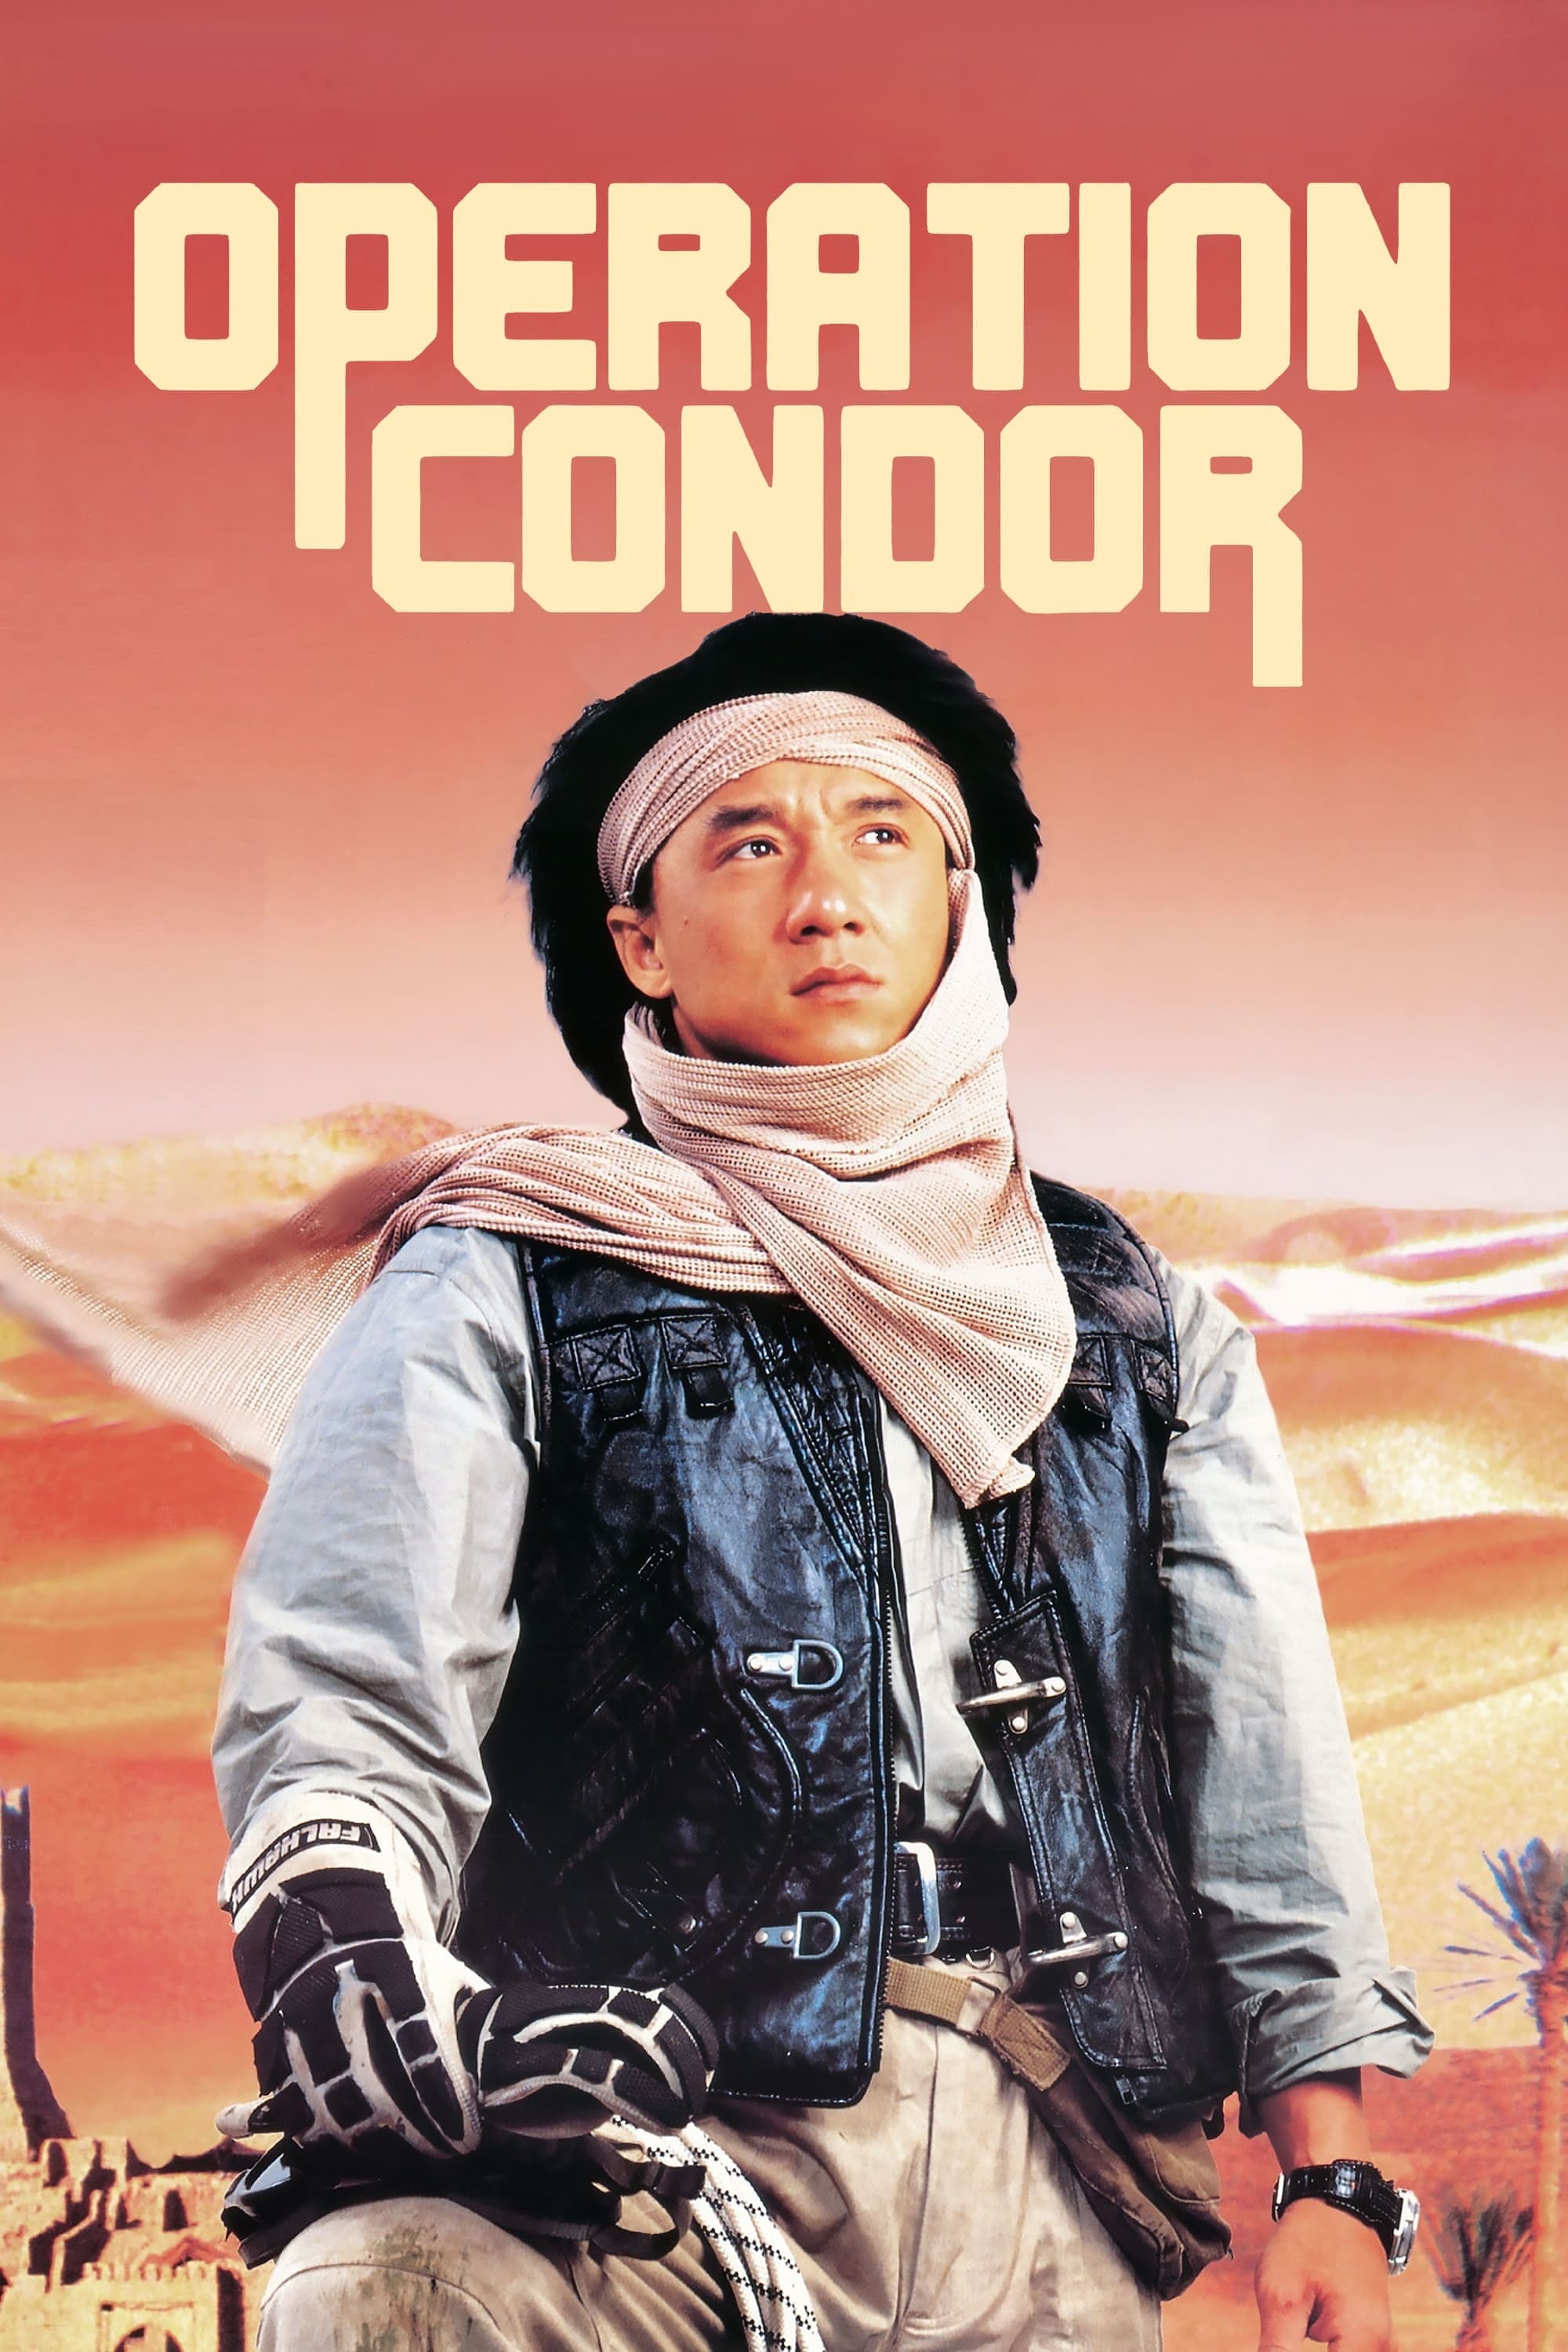 Operação Condor: Um Kickboxer Muito Louco (1991)